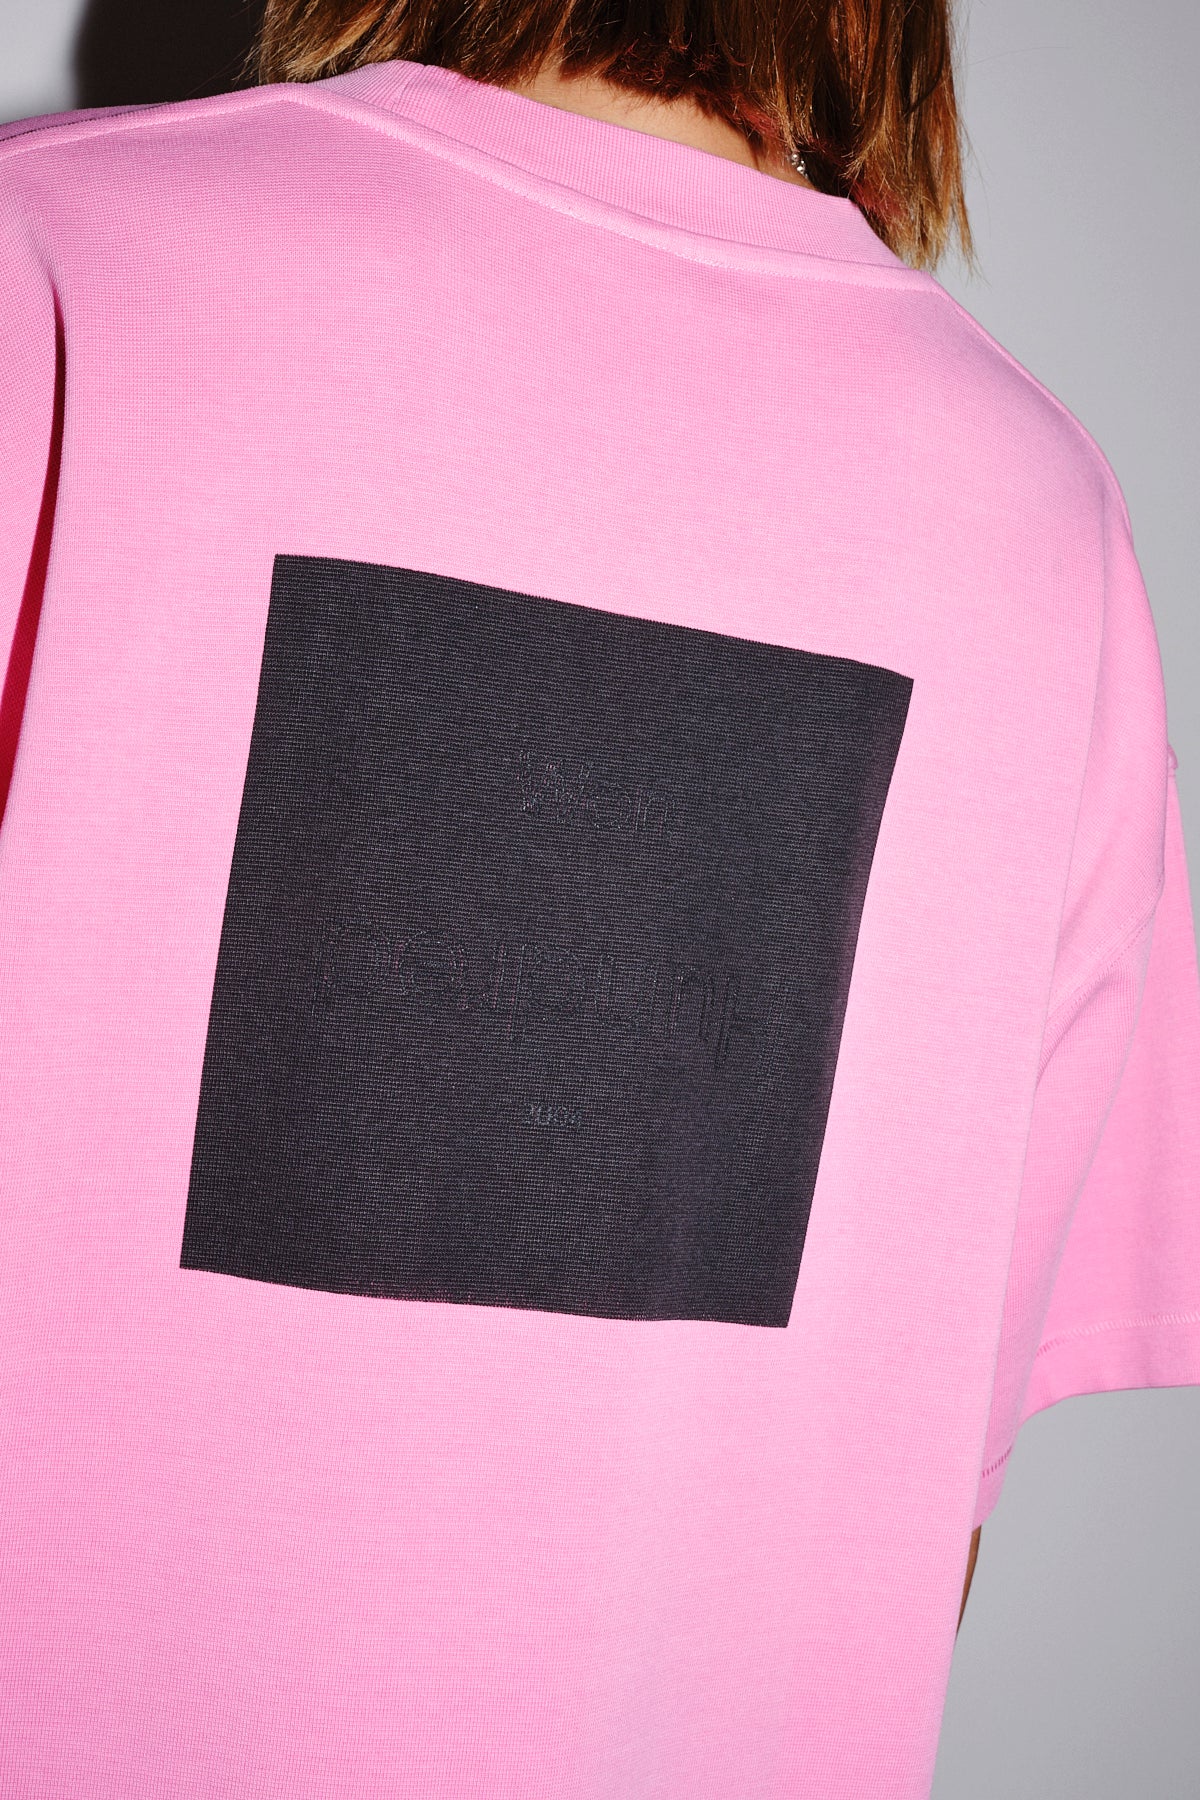 Won Hundred Women Jasmine Embossed T-shirt Fuchsia Pink